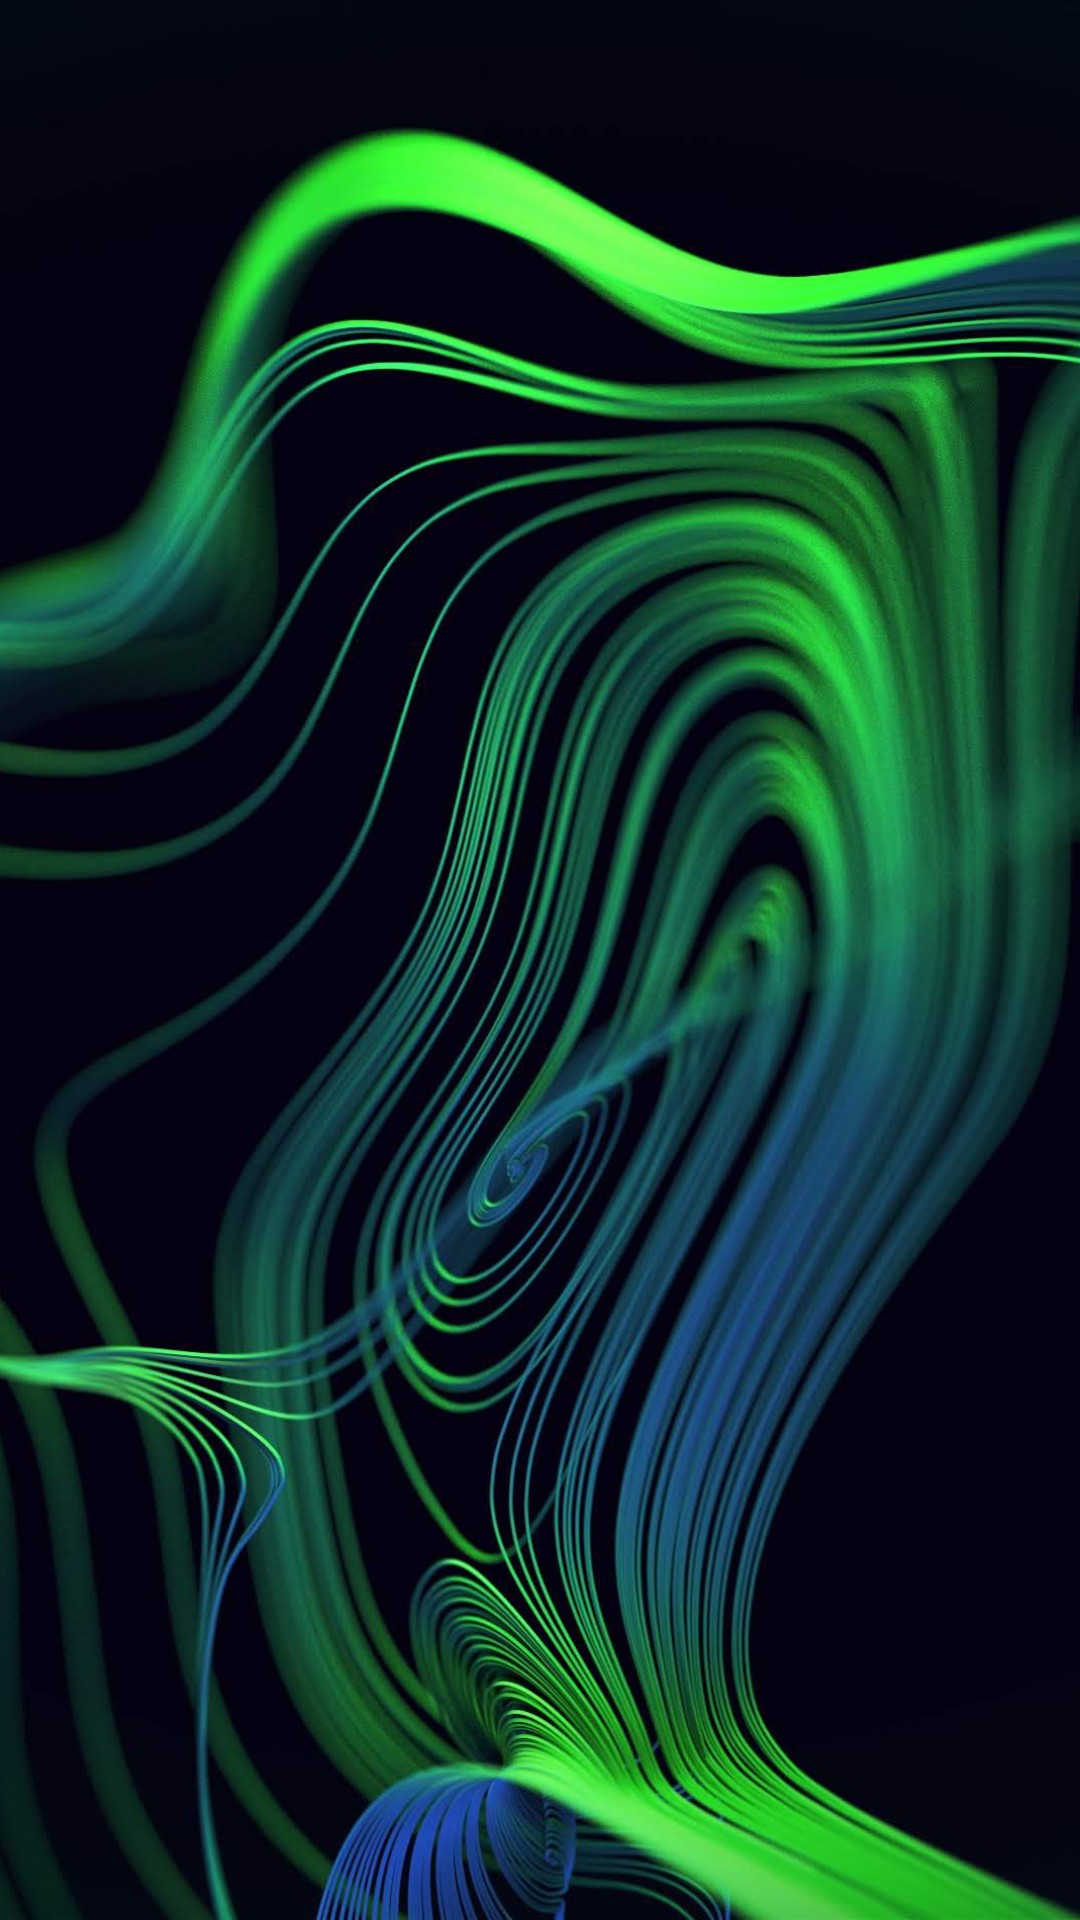 razer iphone wallpaper,green,fractal art,water,pattern,design